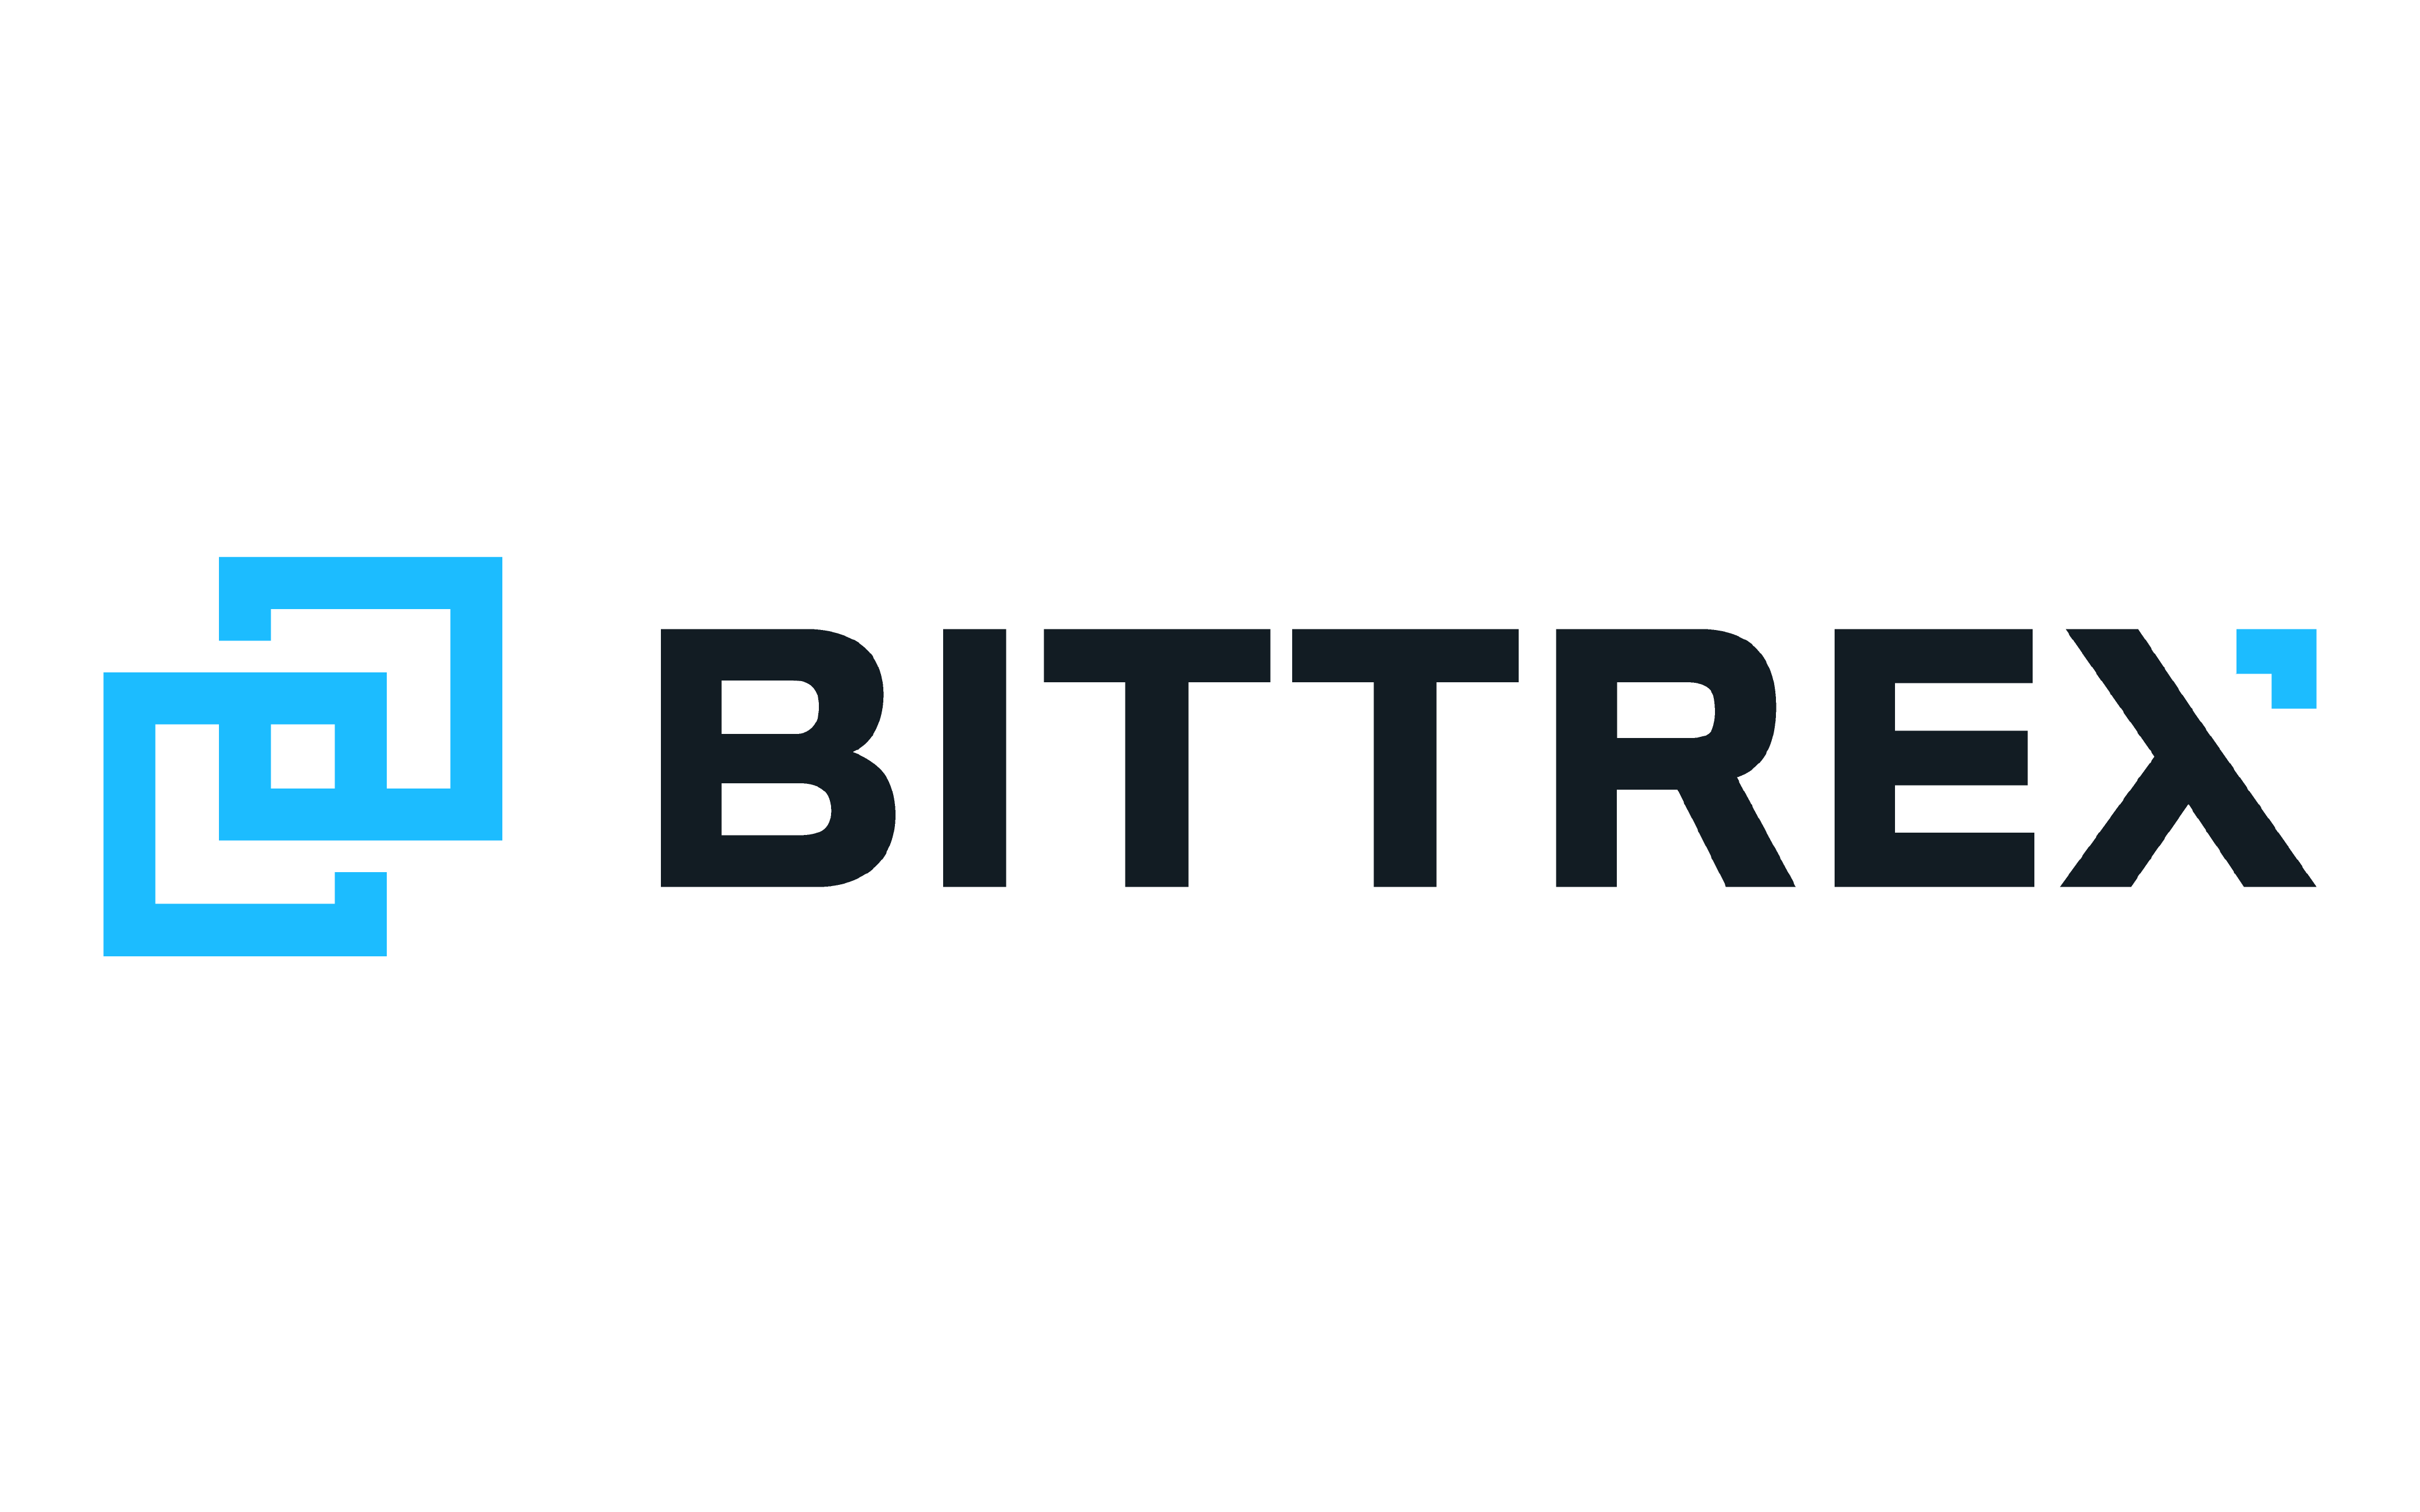 BITTREX